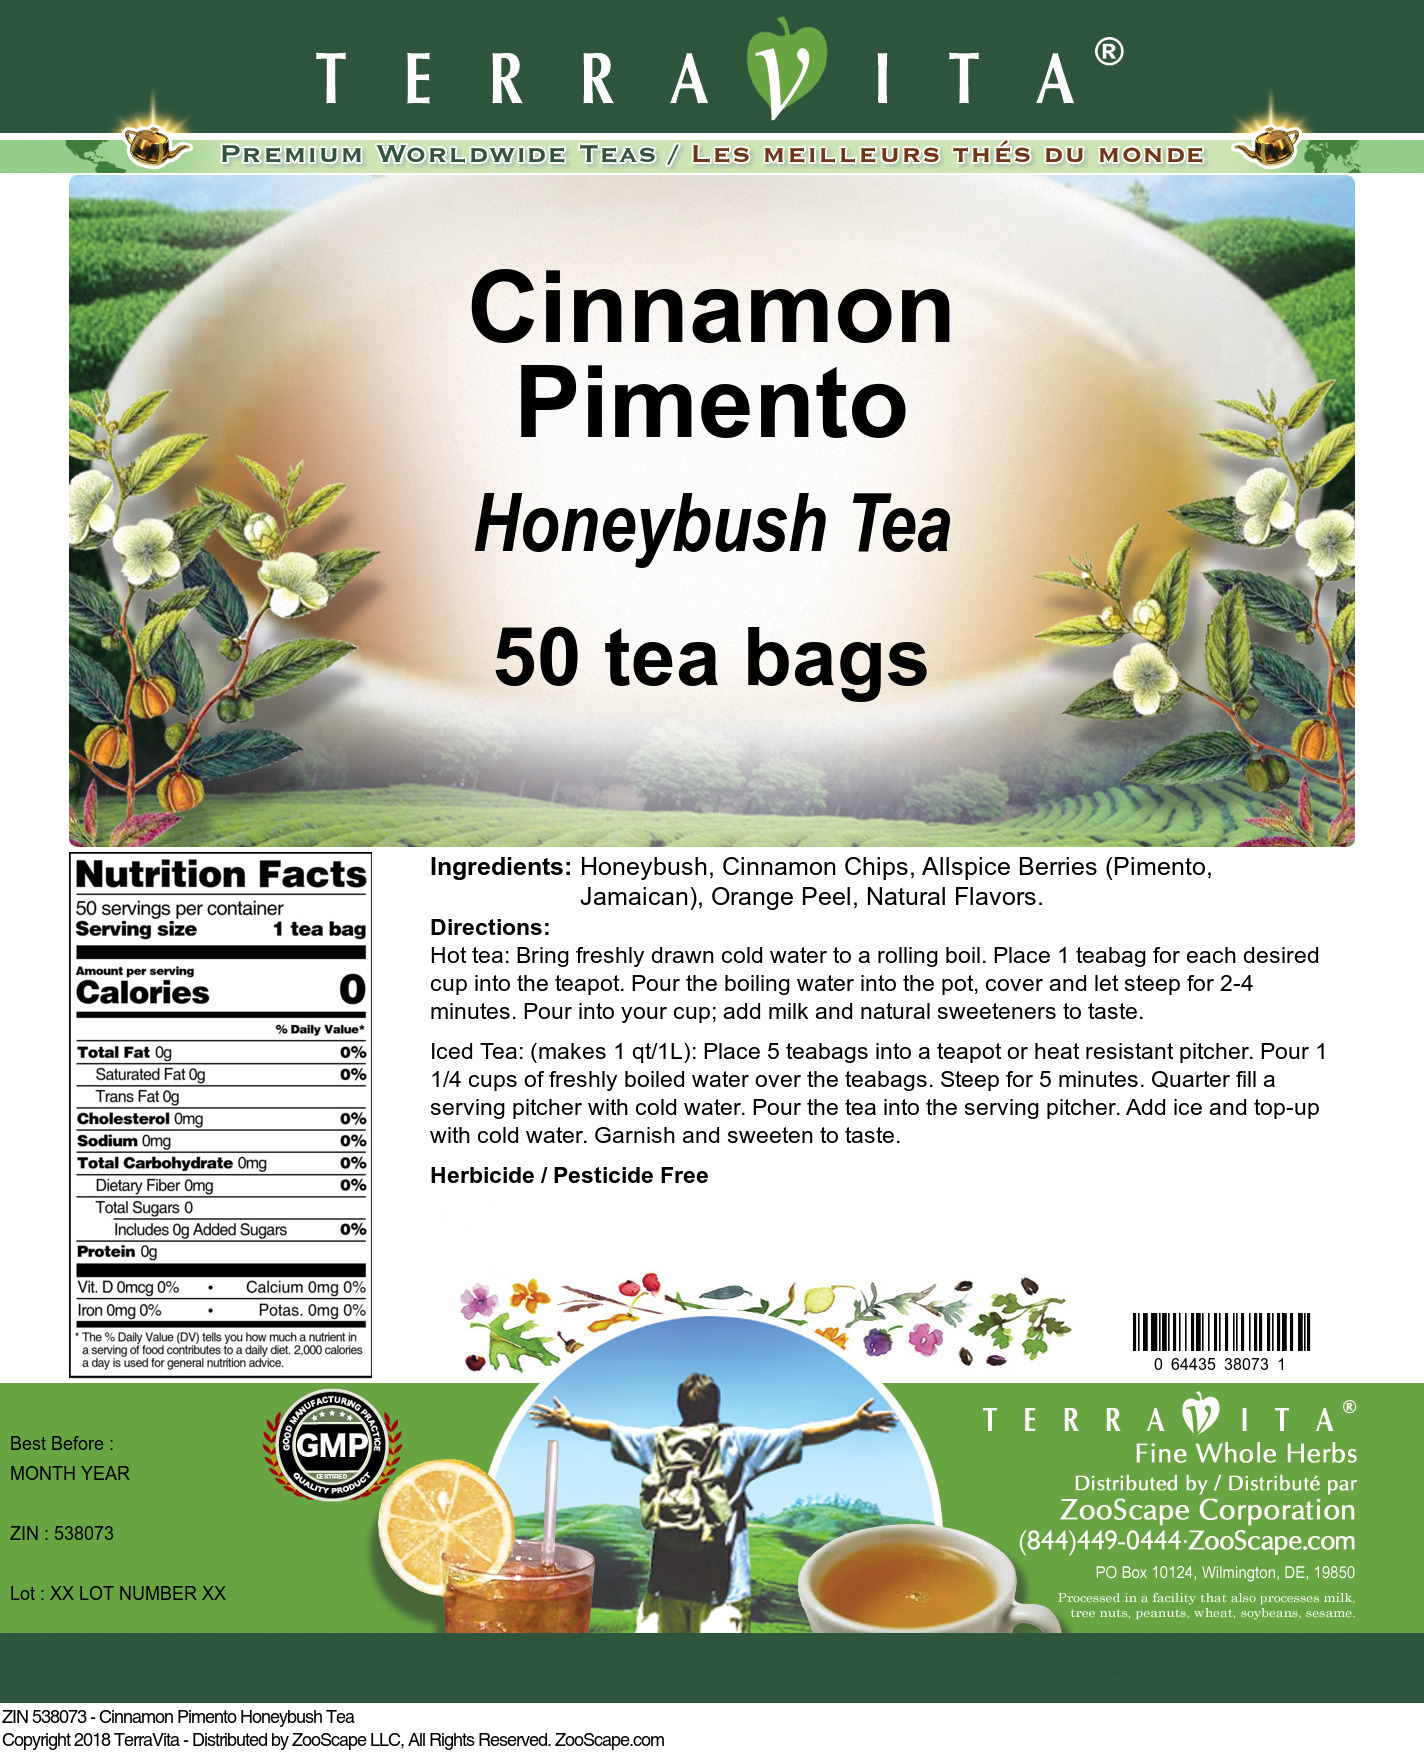 Cinnamon Pimento Honeybush Tea - Label